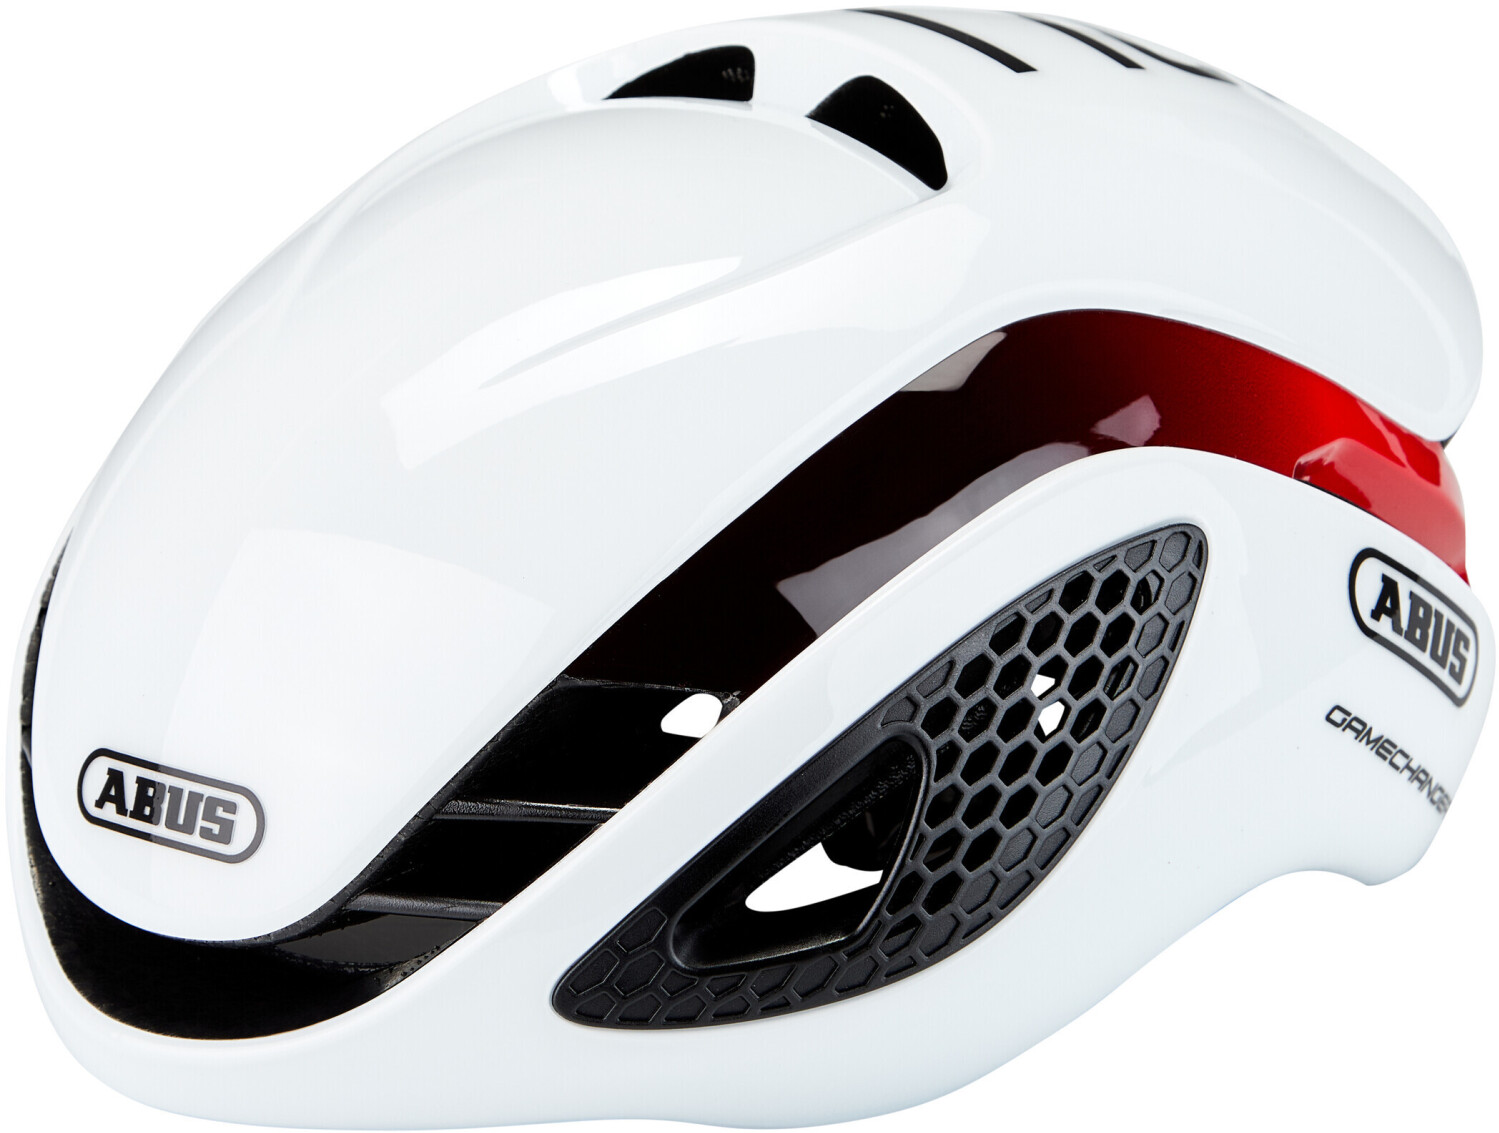 Photos - Bike Helmet ABUS GameChanger white red 